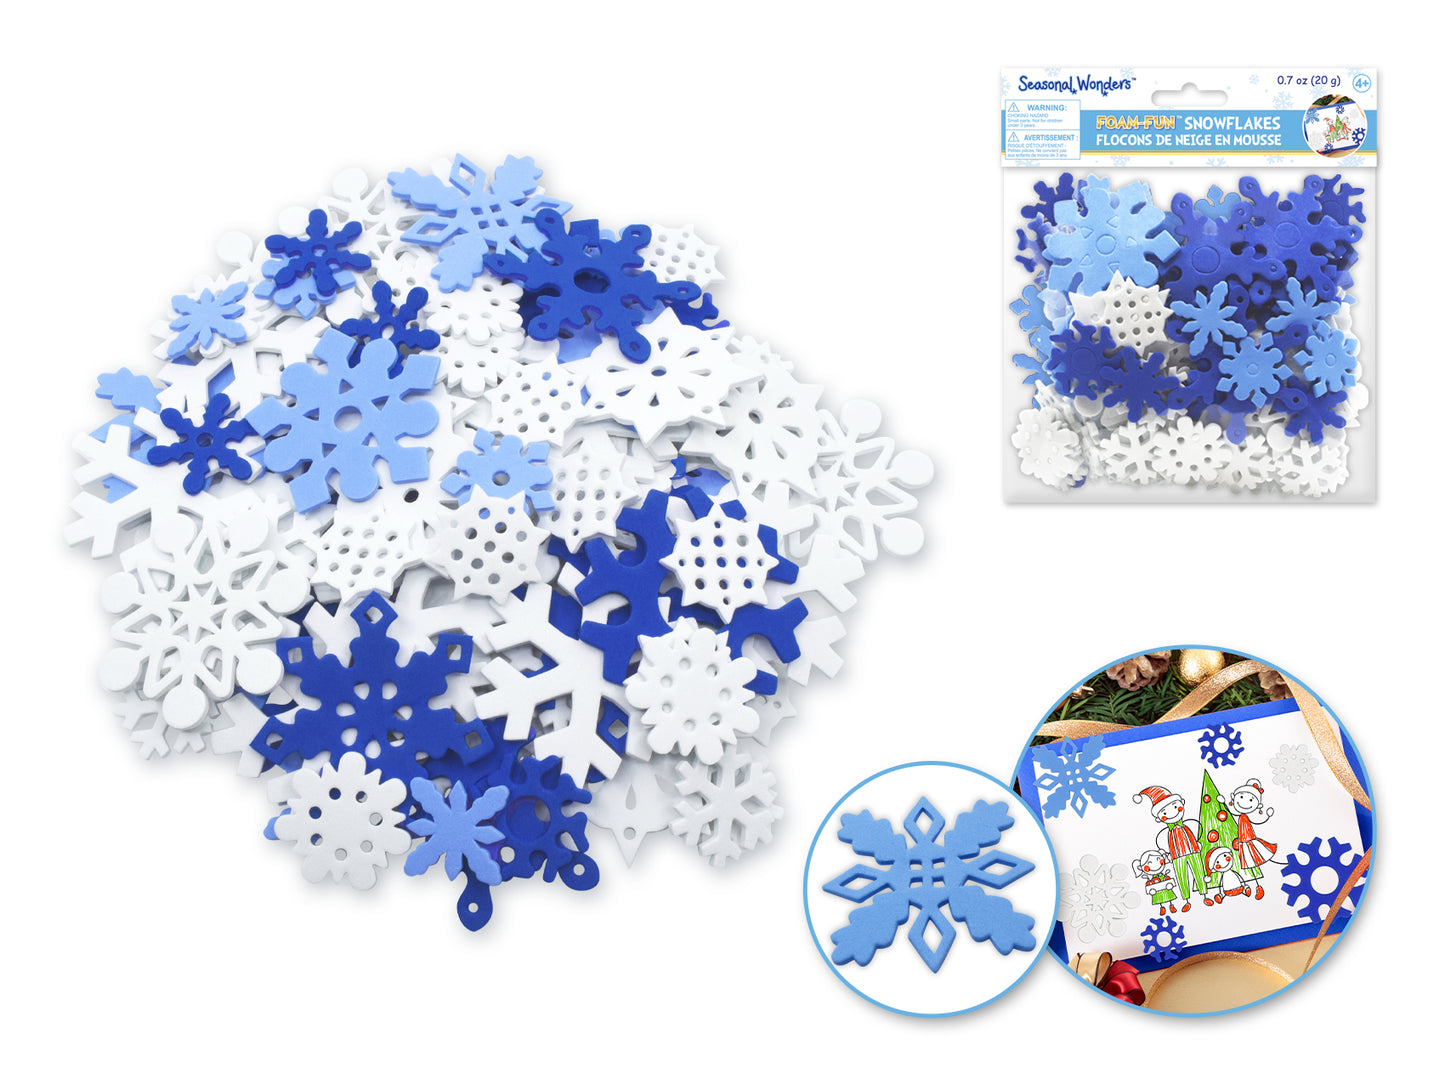 Seasonal Wonders: 20g Foam-Fun Snowflakes